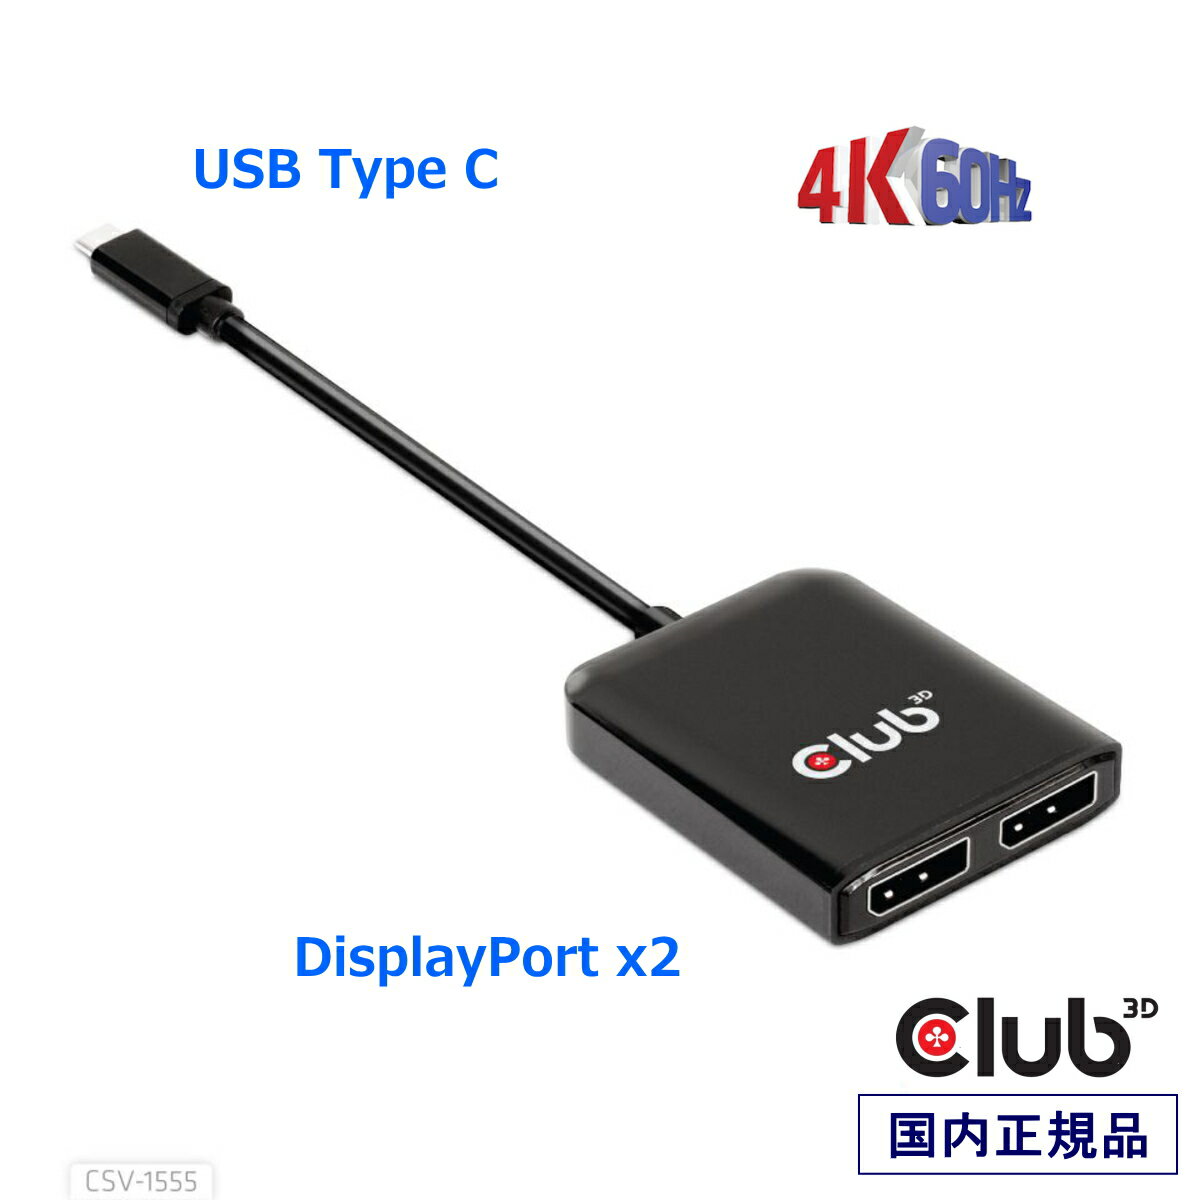 国内正規品 Club 3D MST Hub USB Type C to DisplayPort 4K 60Hz Dual Monitor デュアル ディスプレイ 分配ハブ (CSV-1555)